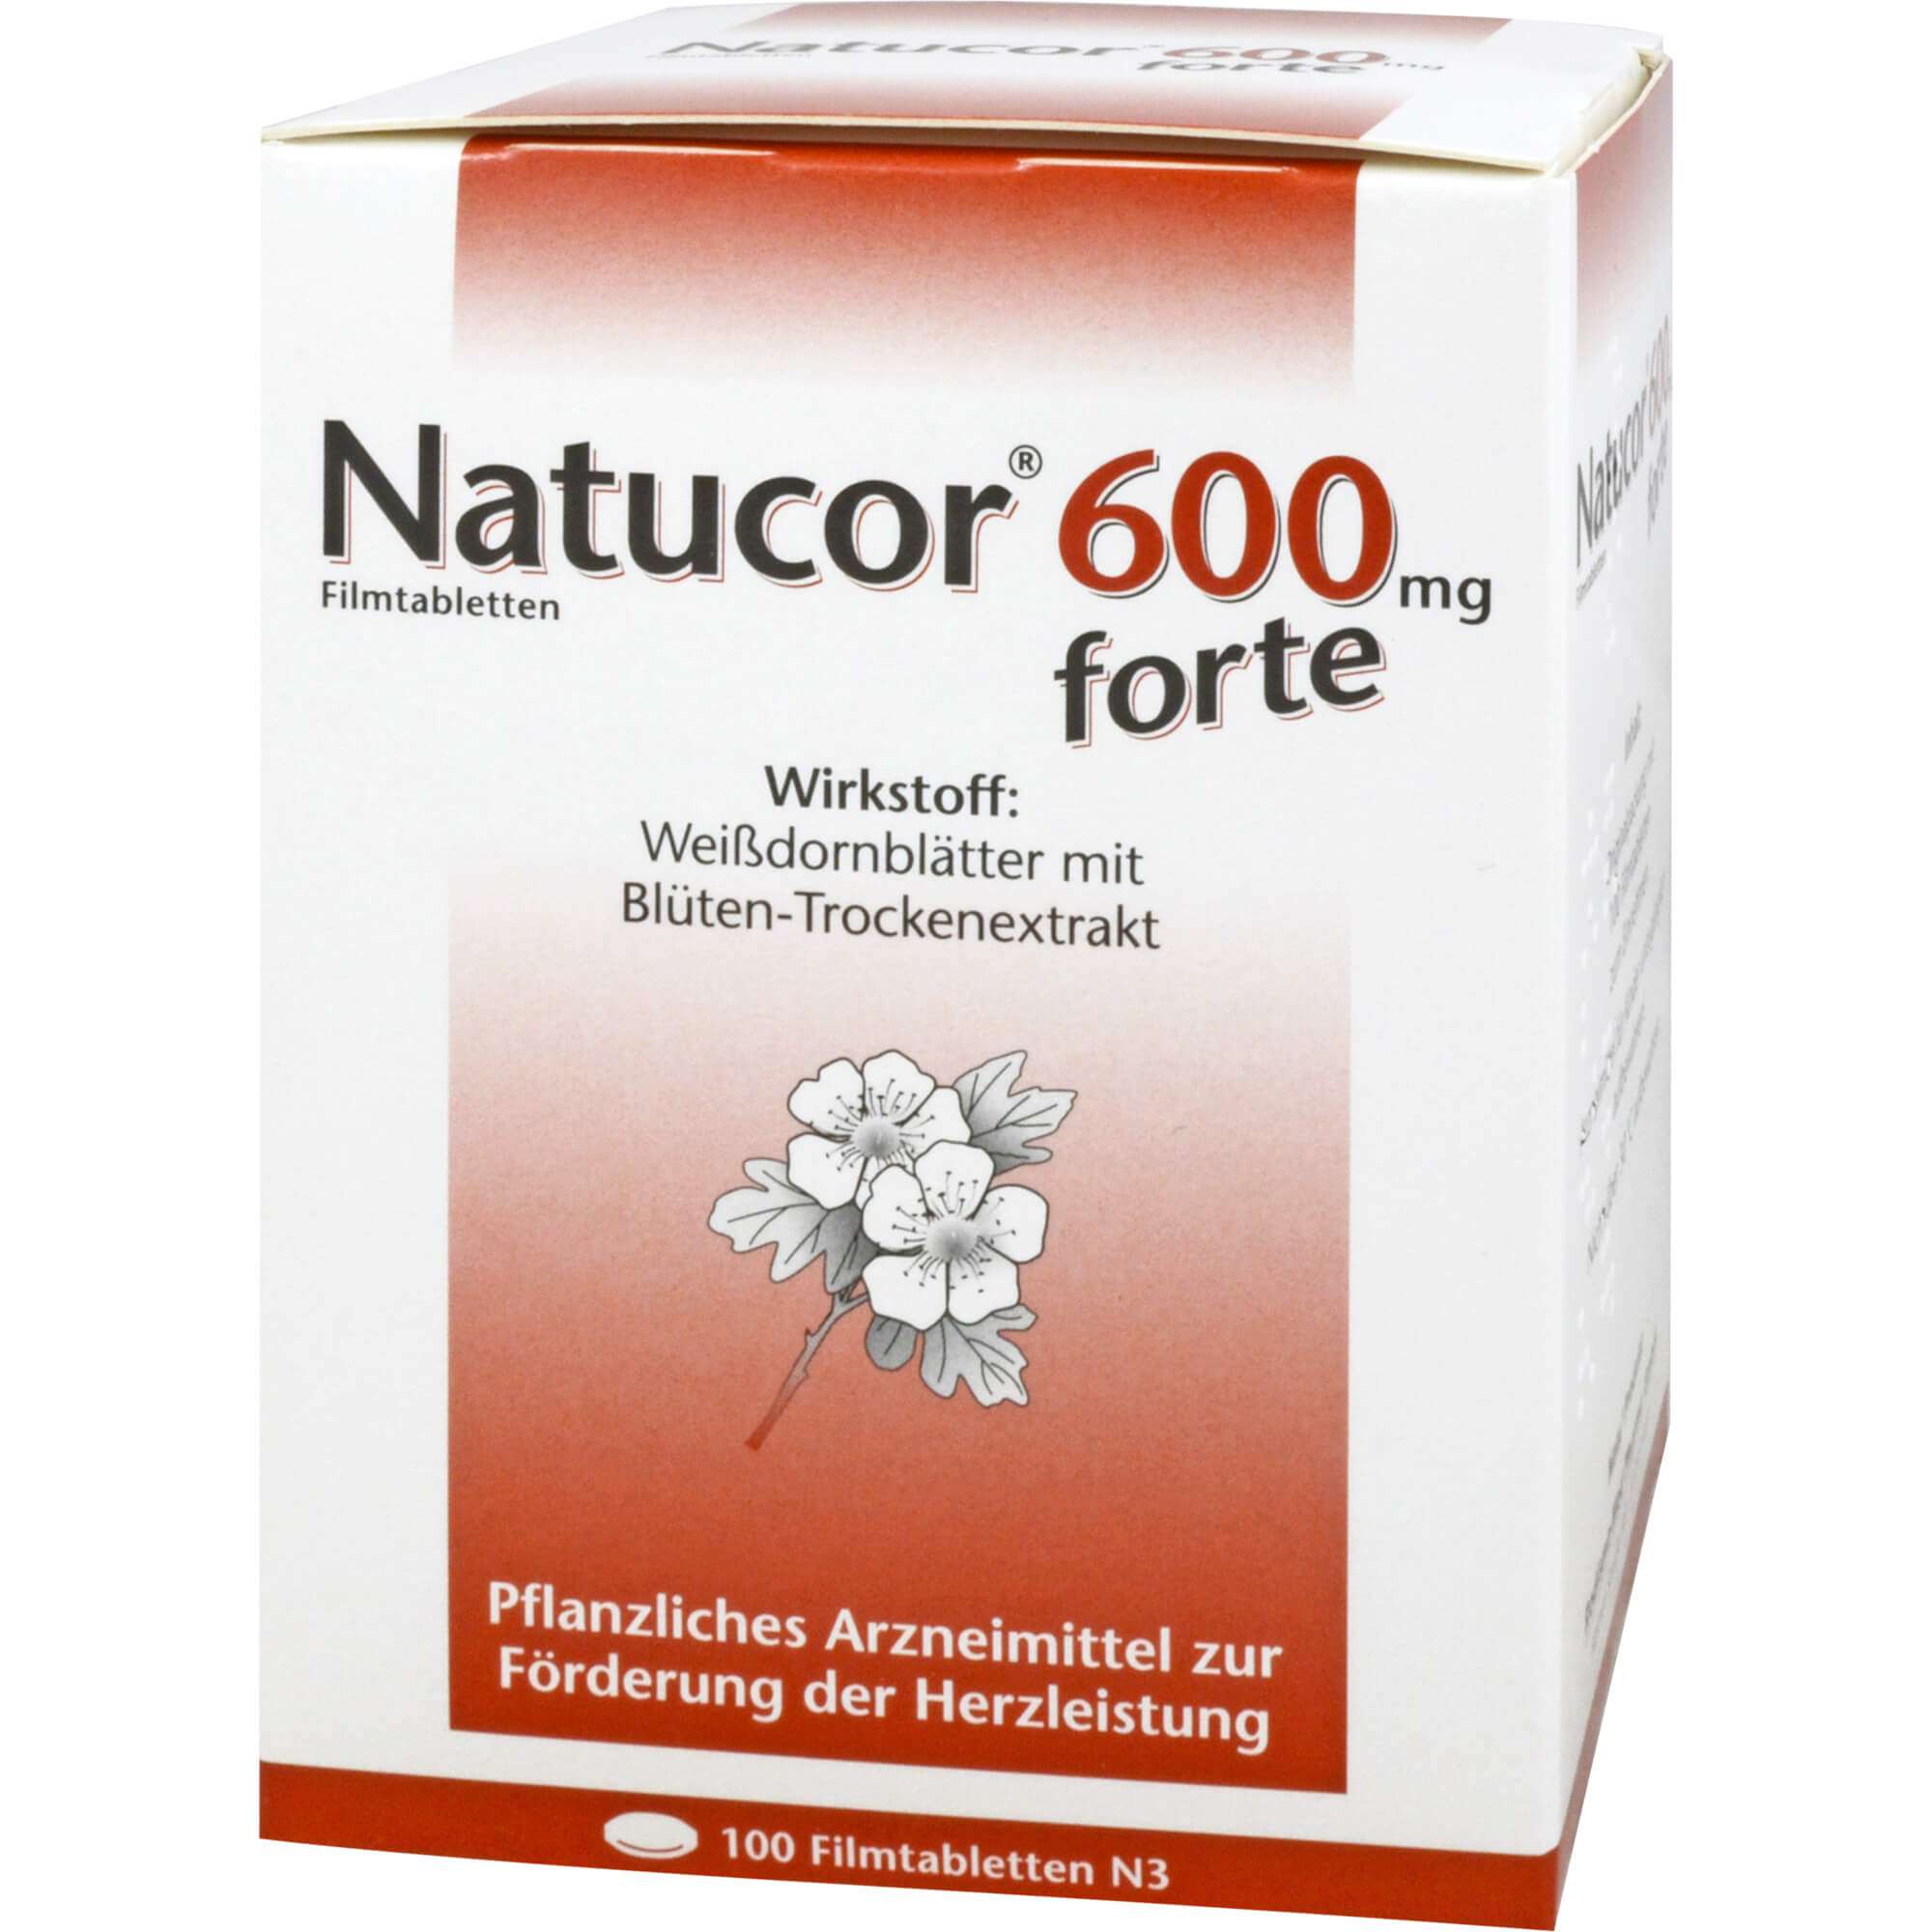 NATUCOR 600 mg forte Filmtabl.